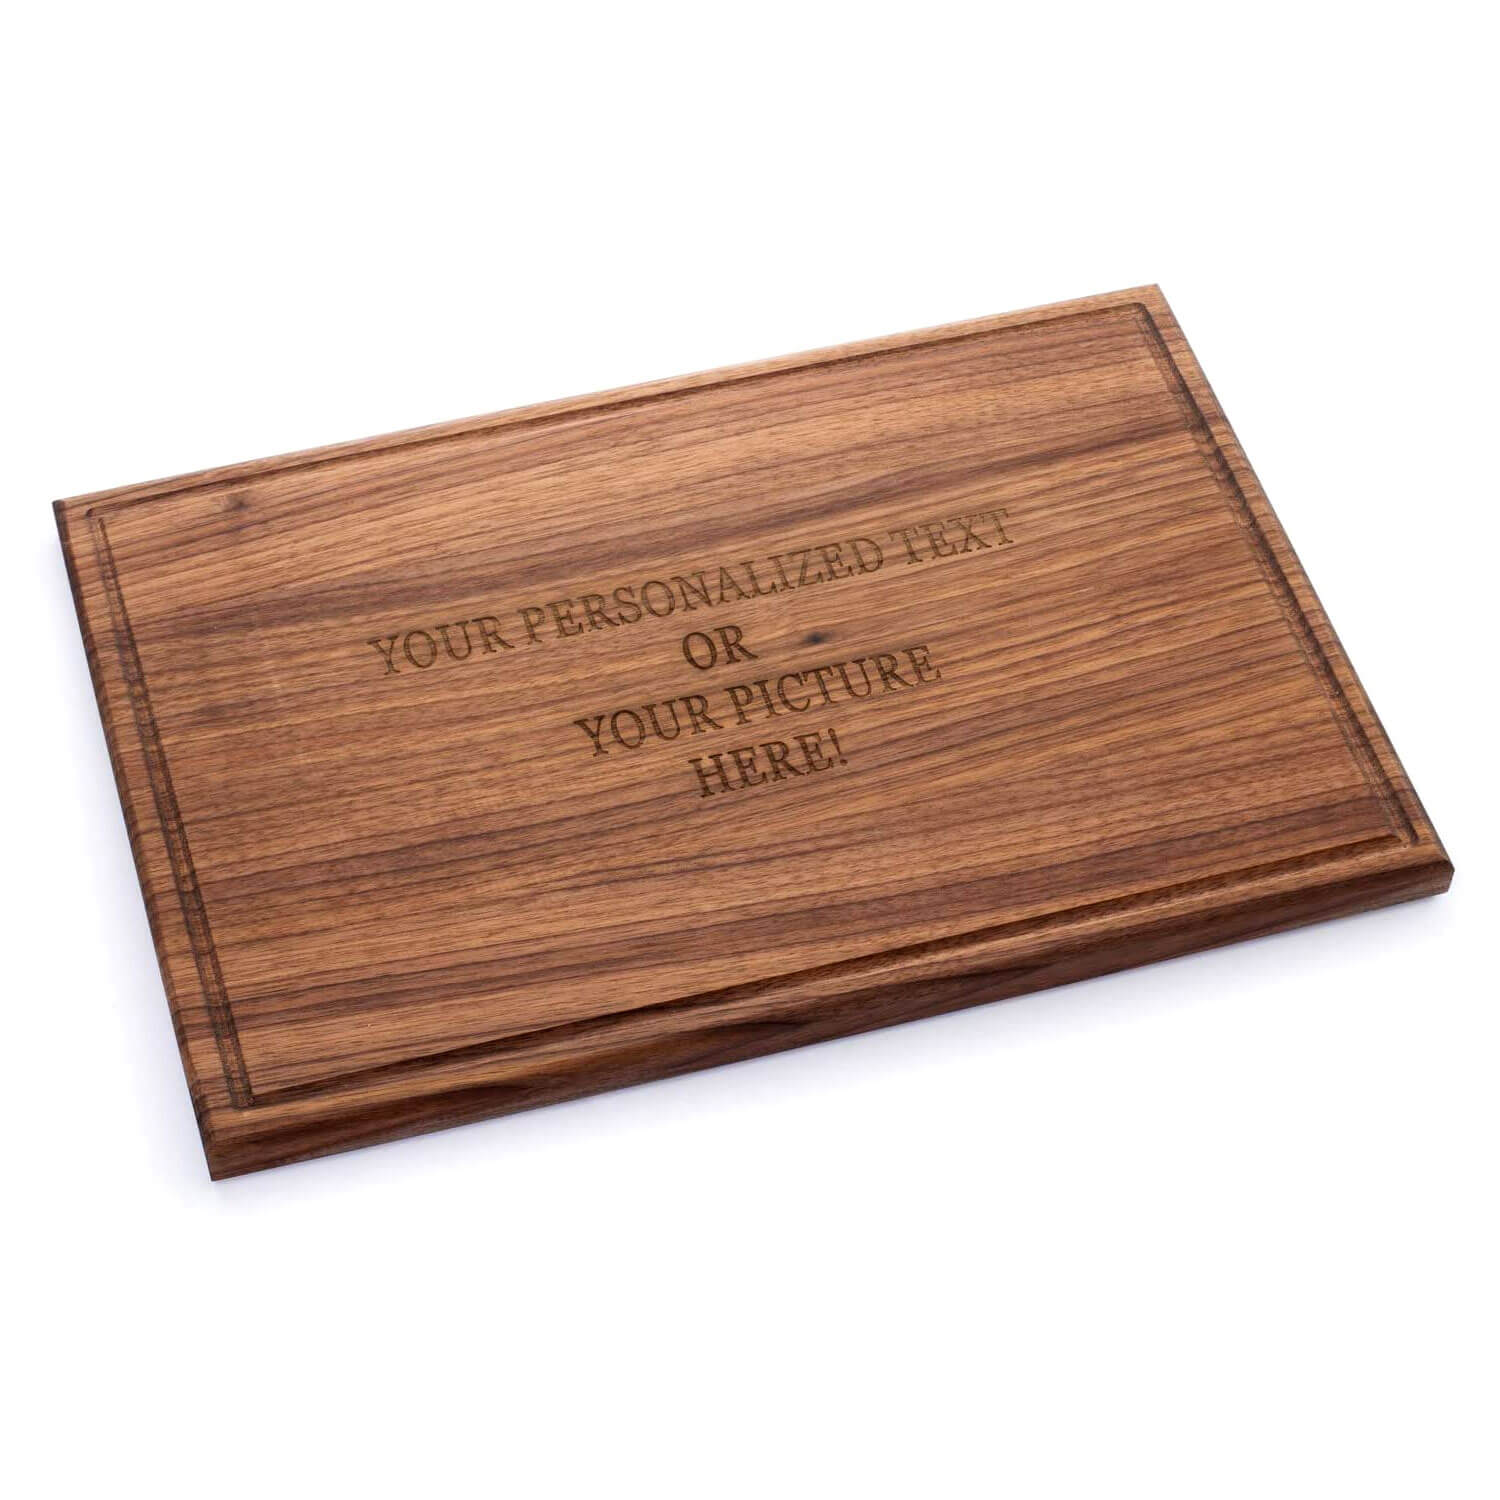 Grande tagliere in legno con incisione personalizzata in legno di noce (44  x 30 x 2 cm)